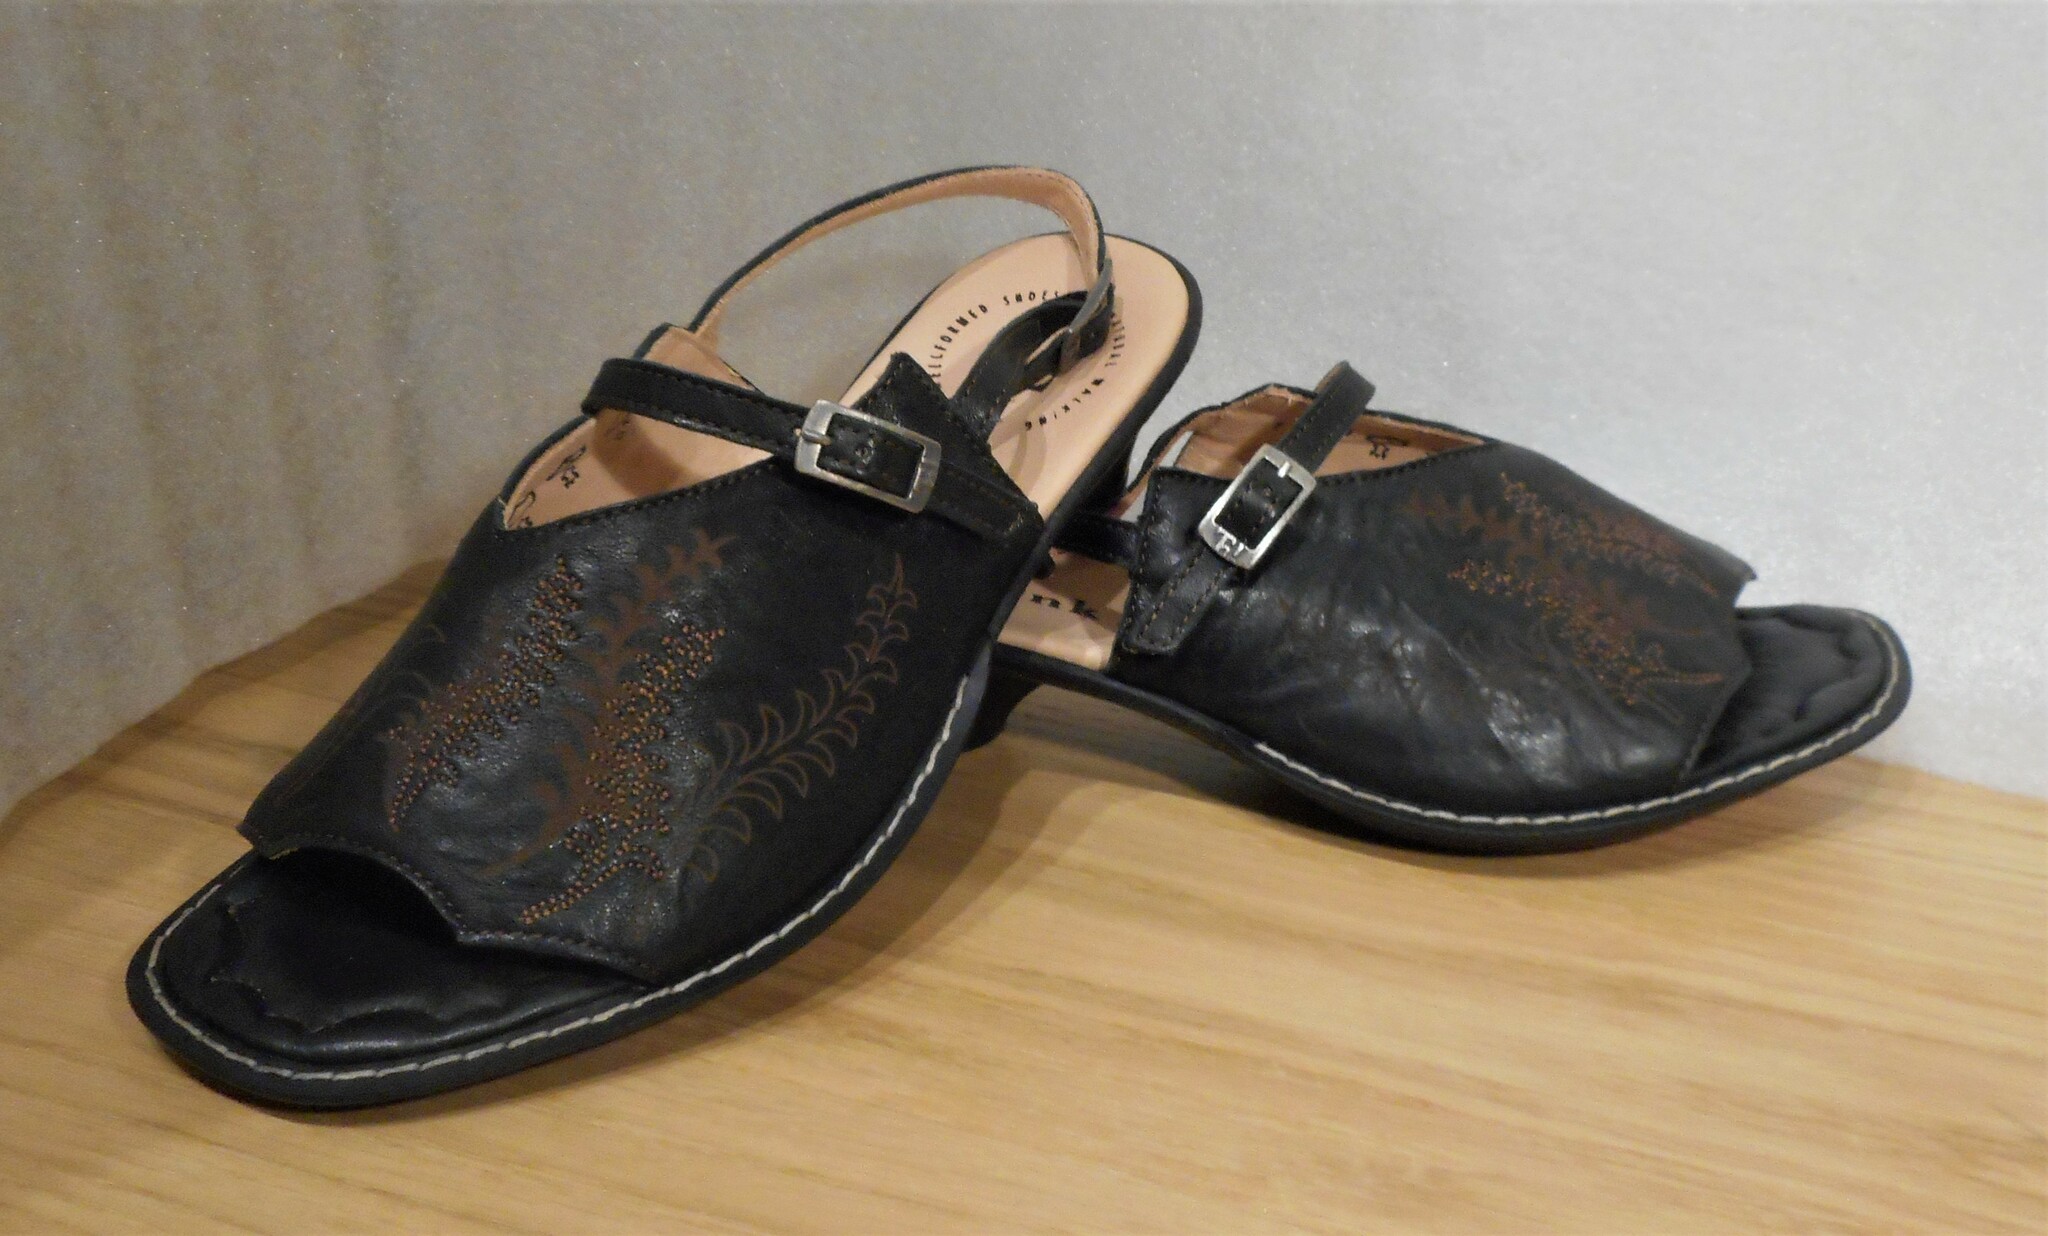 Svart sandalett med brunt, broderat mönster - fabrikat Think!